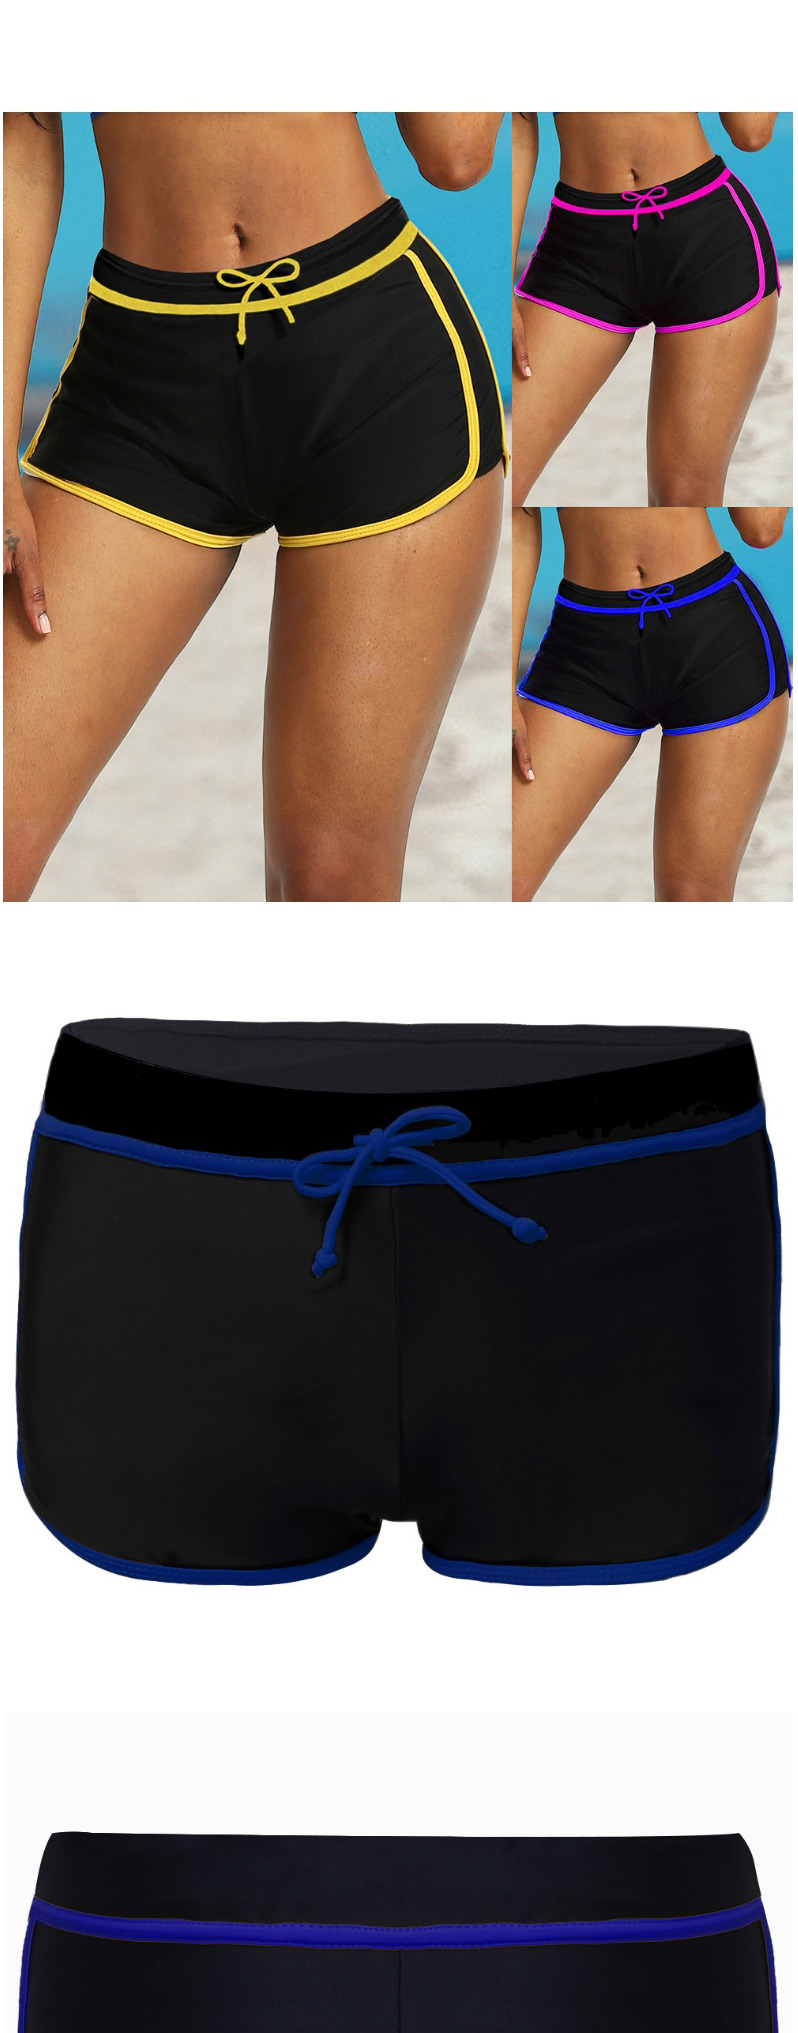 Fashion Blue Skinny Lace-up Short Swim Trunks,Shorts